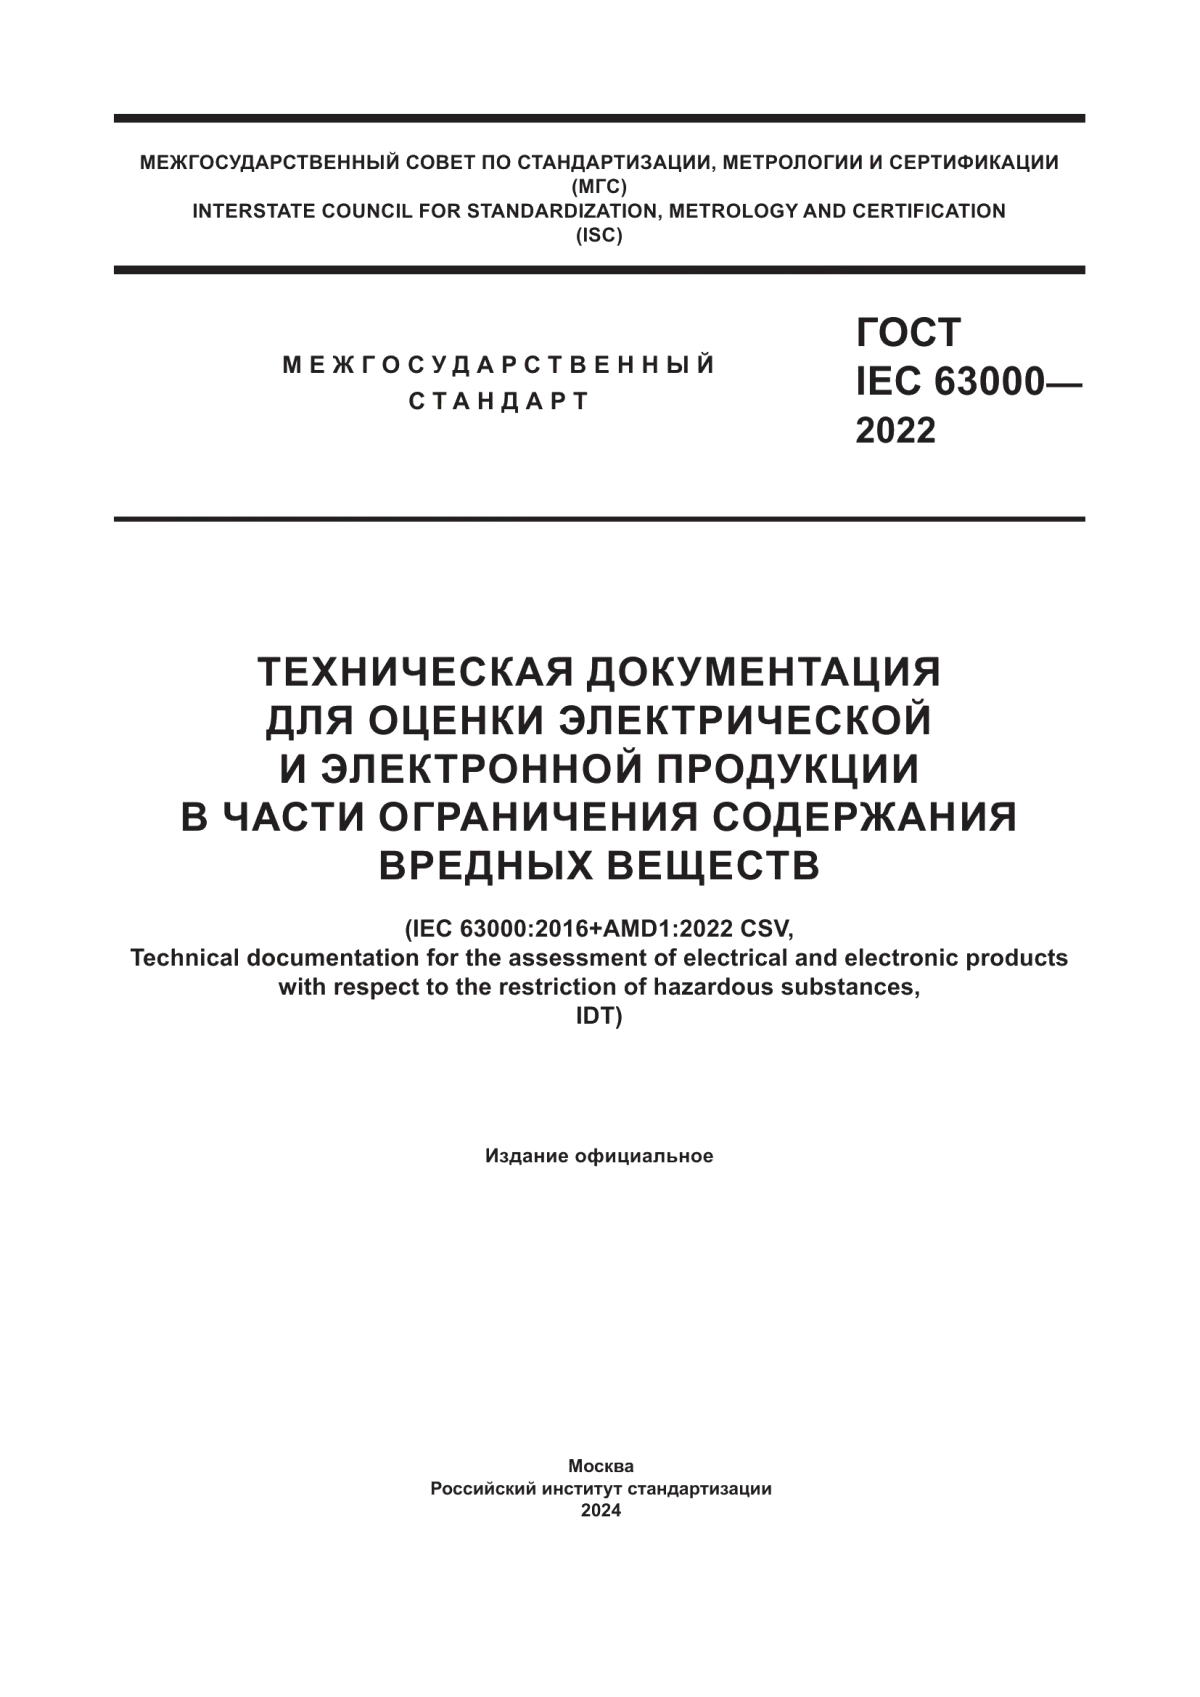 ГОСТ IEC 63000-2022 Техническая документация для оценки электрической и электронной продукции в части ограничения содержания вредных веществ